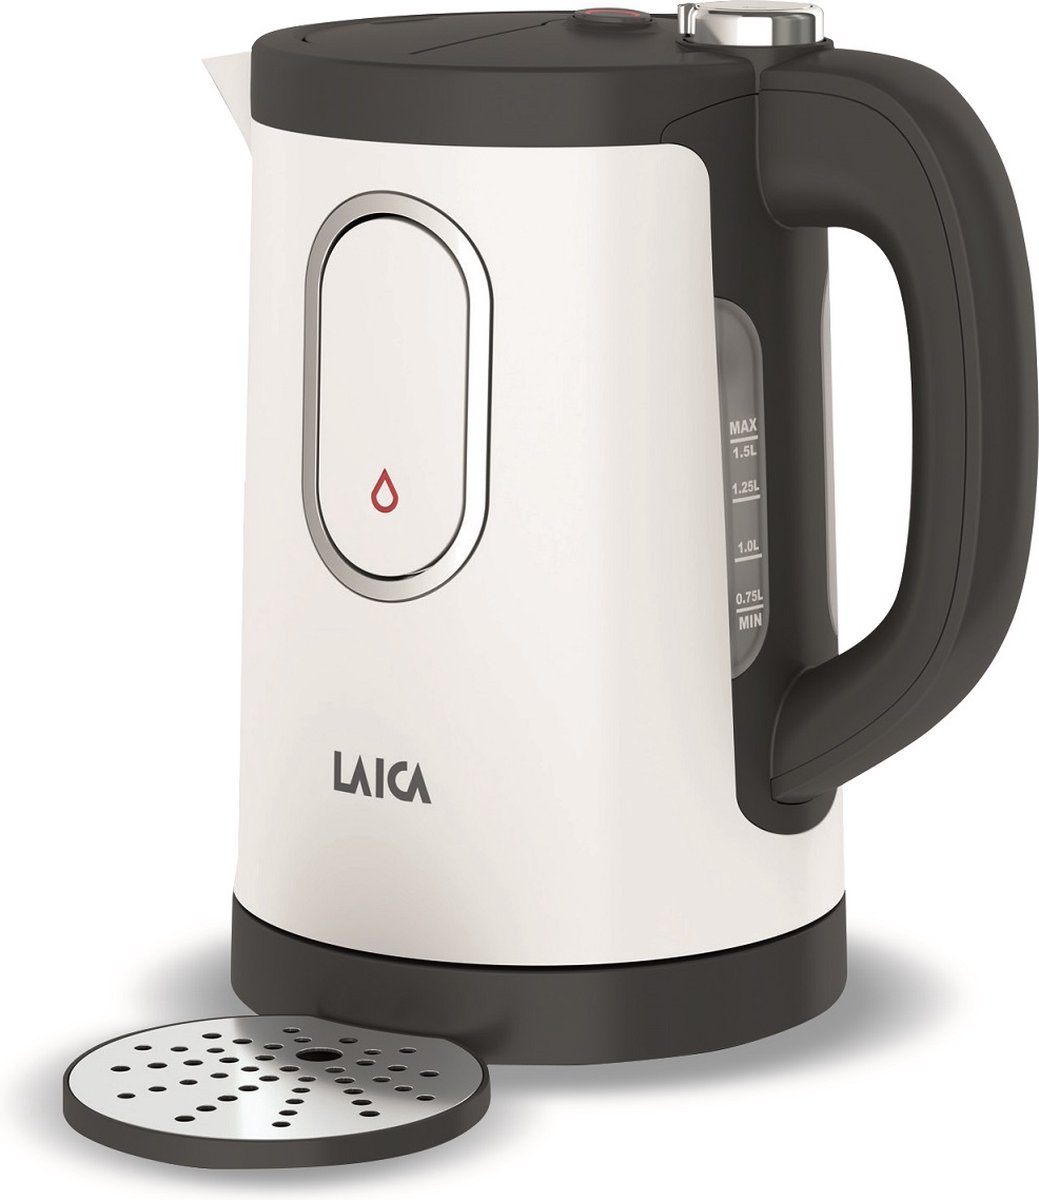 Laica DualFlo - 1,5 liter waterkoker wit - met 'one cup' heetwaterdispenser - energiezuinige, design waterkoker